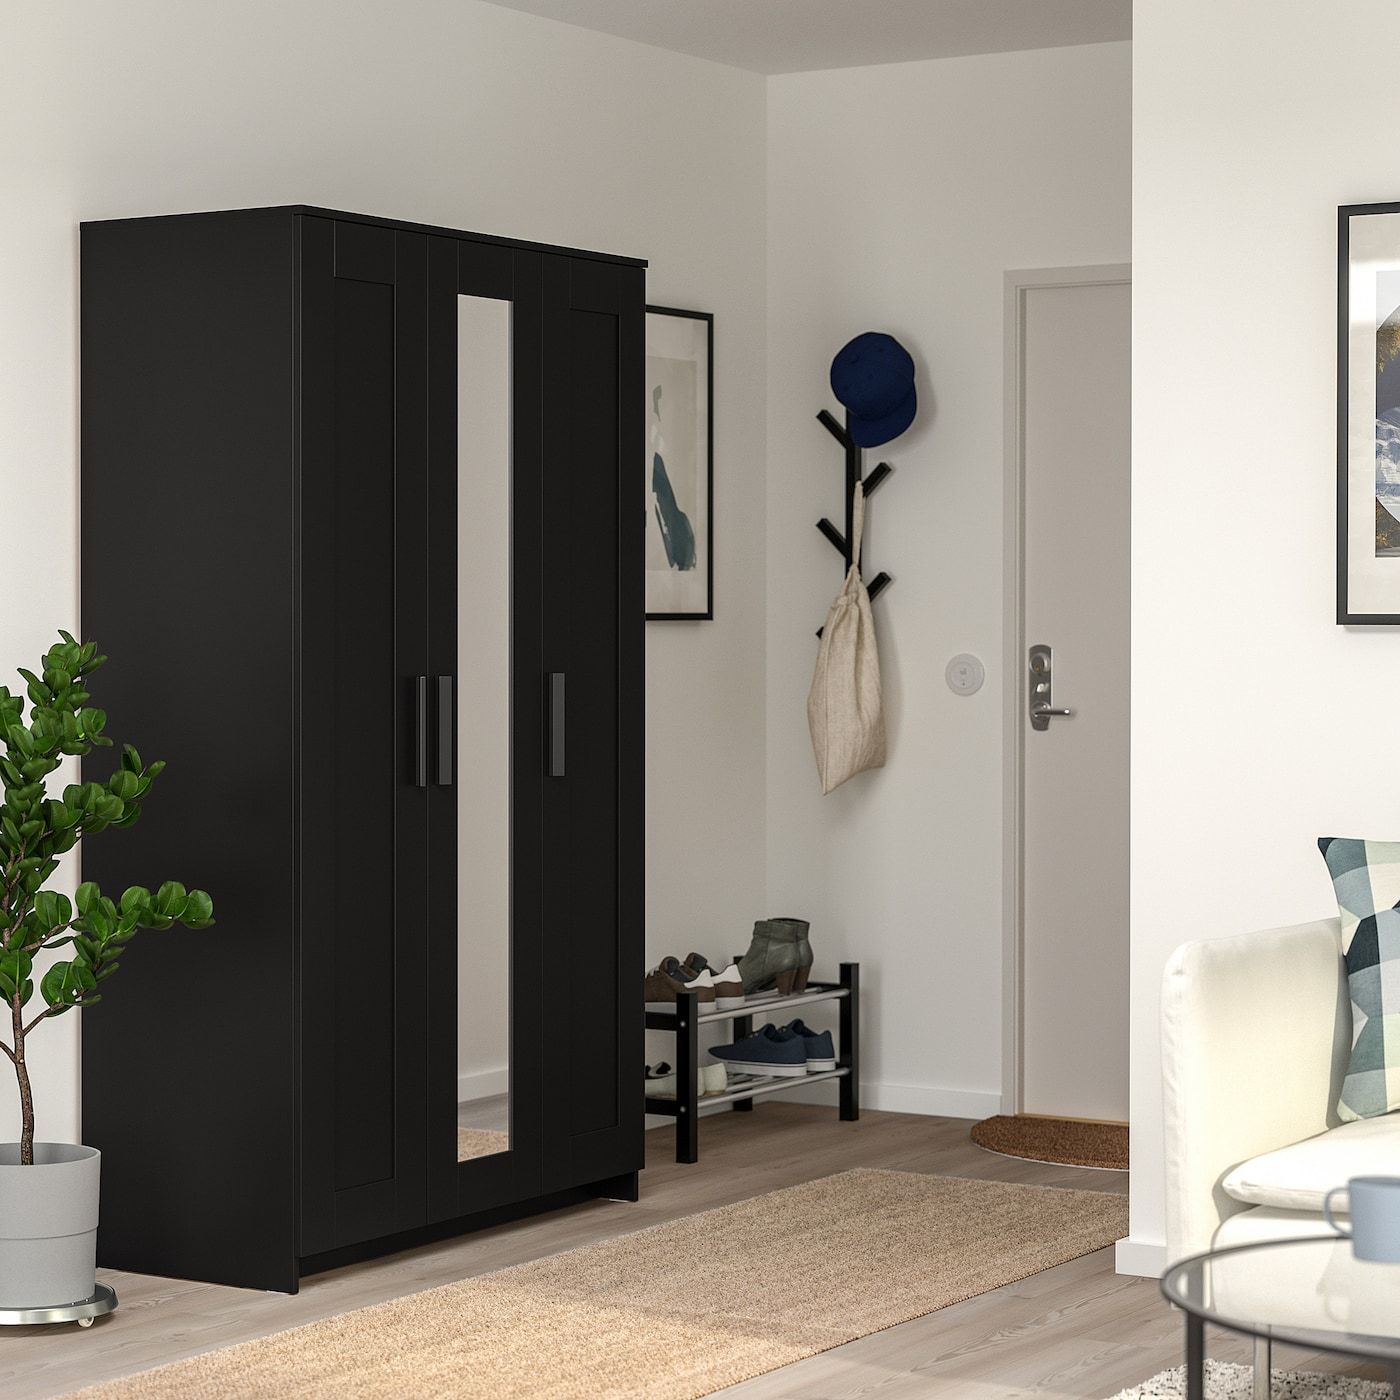 Wardrobe With 3 Doors, Brimnes, Black, 117x190 Cm – Ikea Regarding Black 3 Door Wardrobes (Photo 2 of 10)